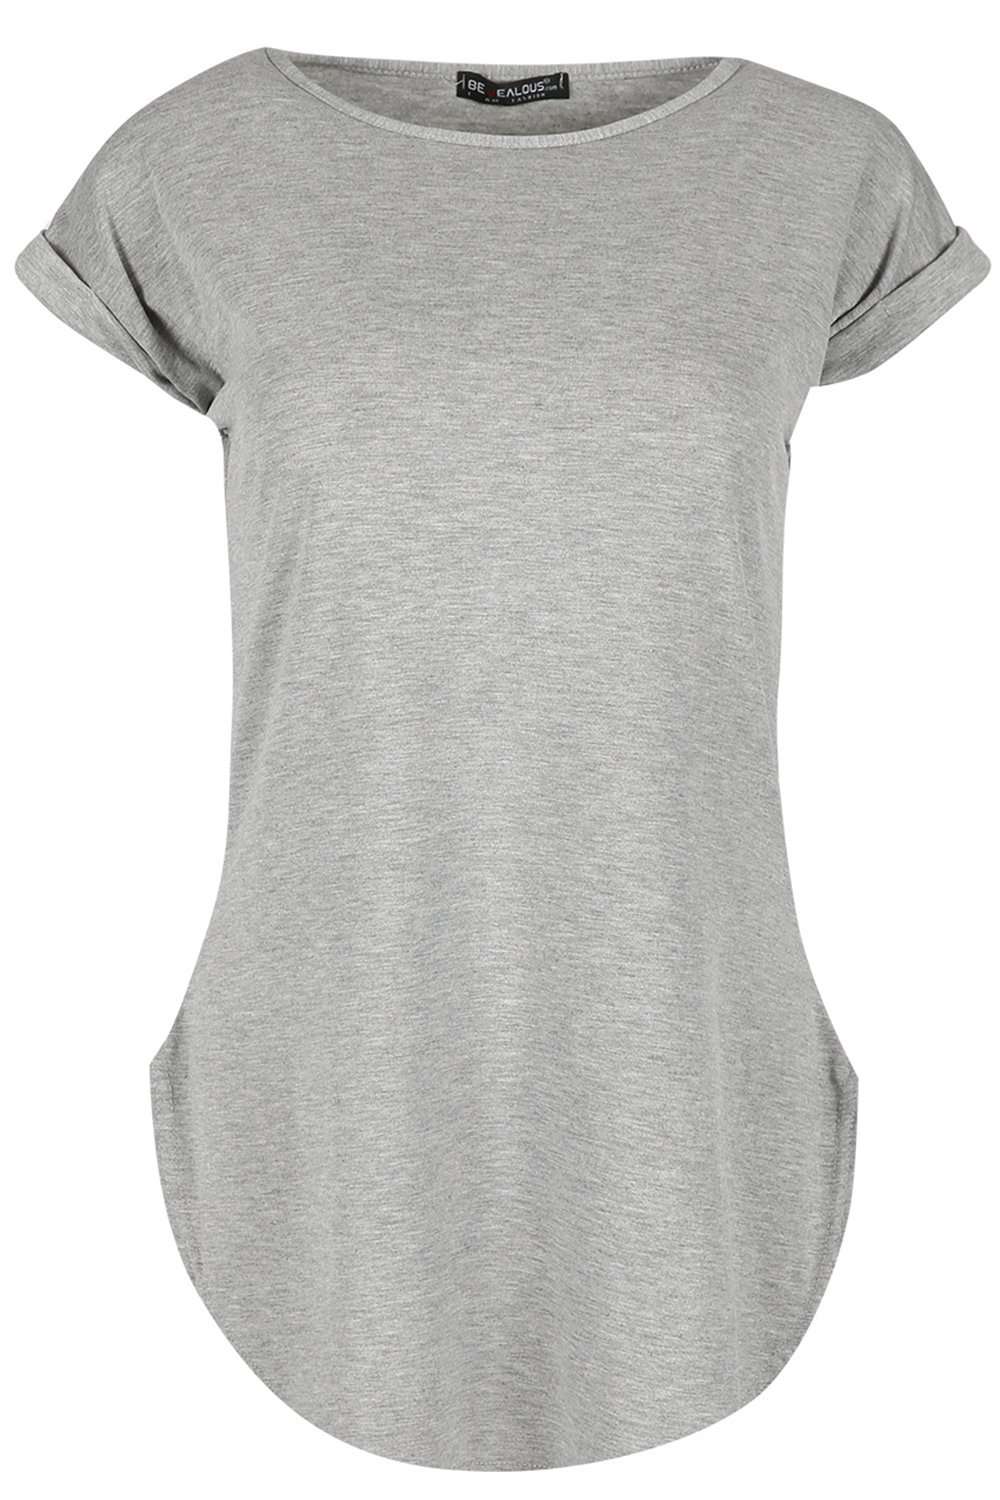 Eliza Curved Hem Basic Jersey Tshirt - bejealous-com